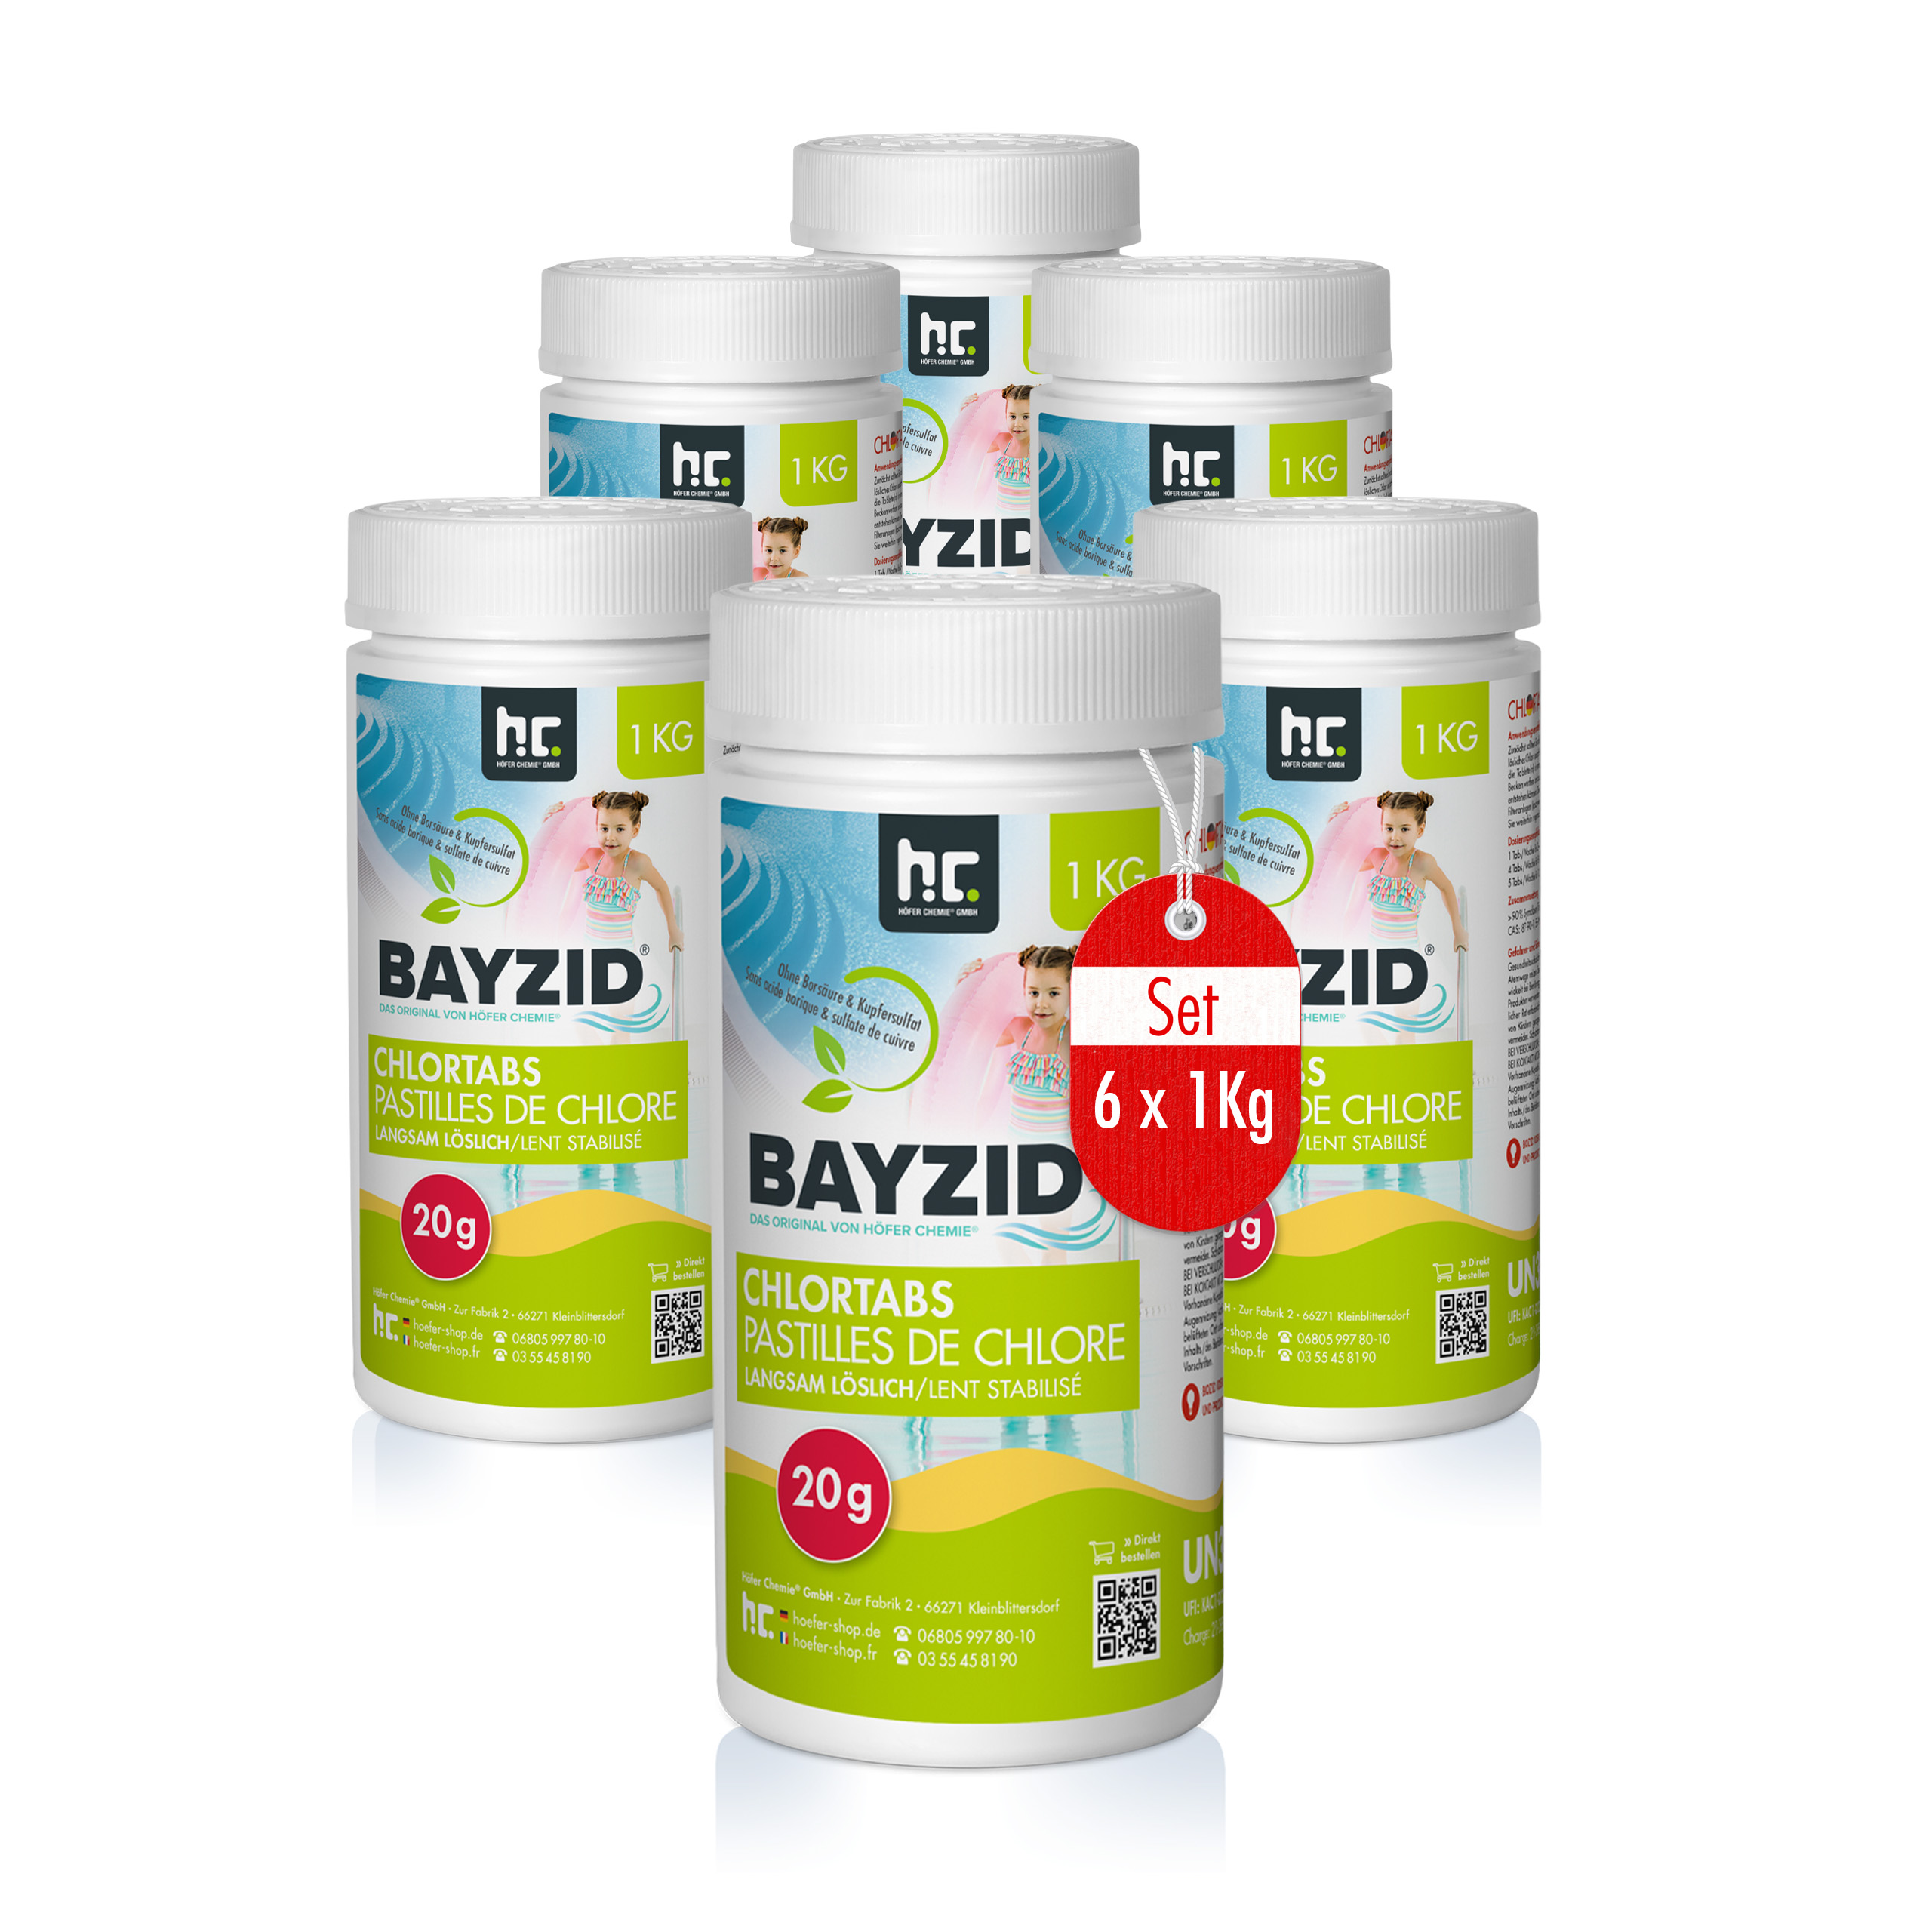 1kg Bayzid® Pastilles de chlore lent (20g)